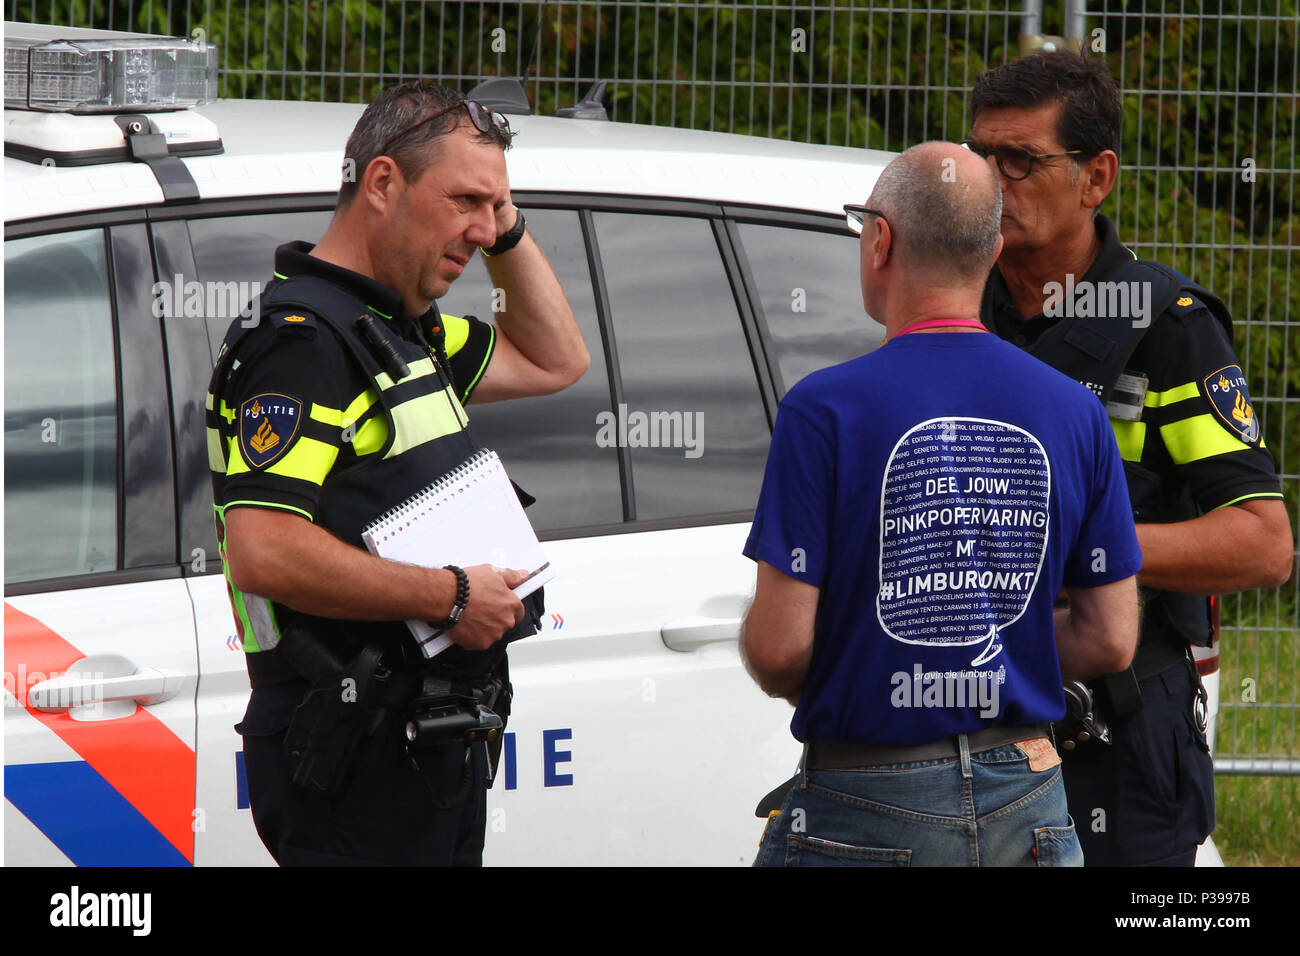 18 Juni 2018, Landgraaf, Niederlande: Polizei sprechen, um Passanten. Nach dem großen Musikfestival "pinkpop" die Lage der schrecklichen Szene wurde von einem Kleinbus in einer Gruppe von Konzertbesuchern. Foto:Ralf Roeger dmp/Presse/dpa Stockfoto